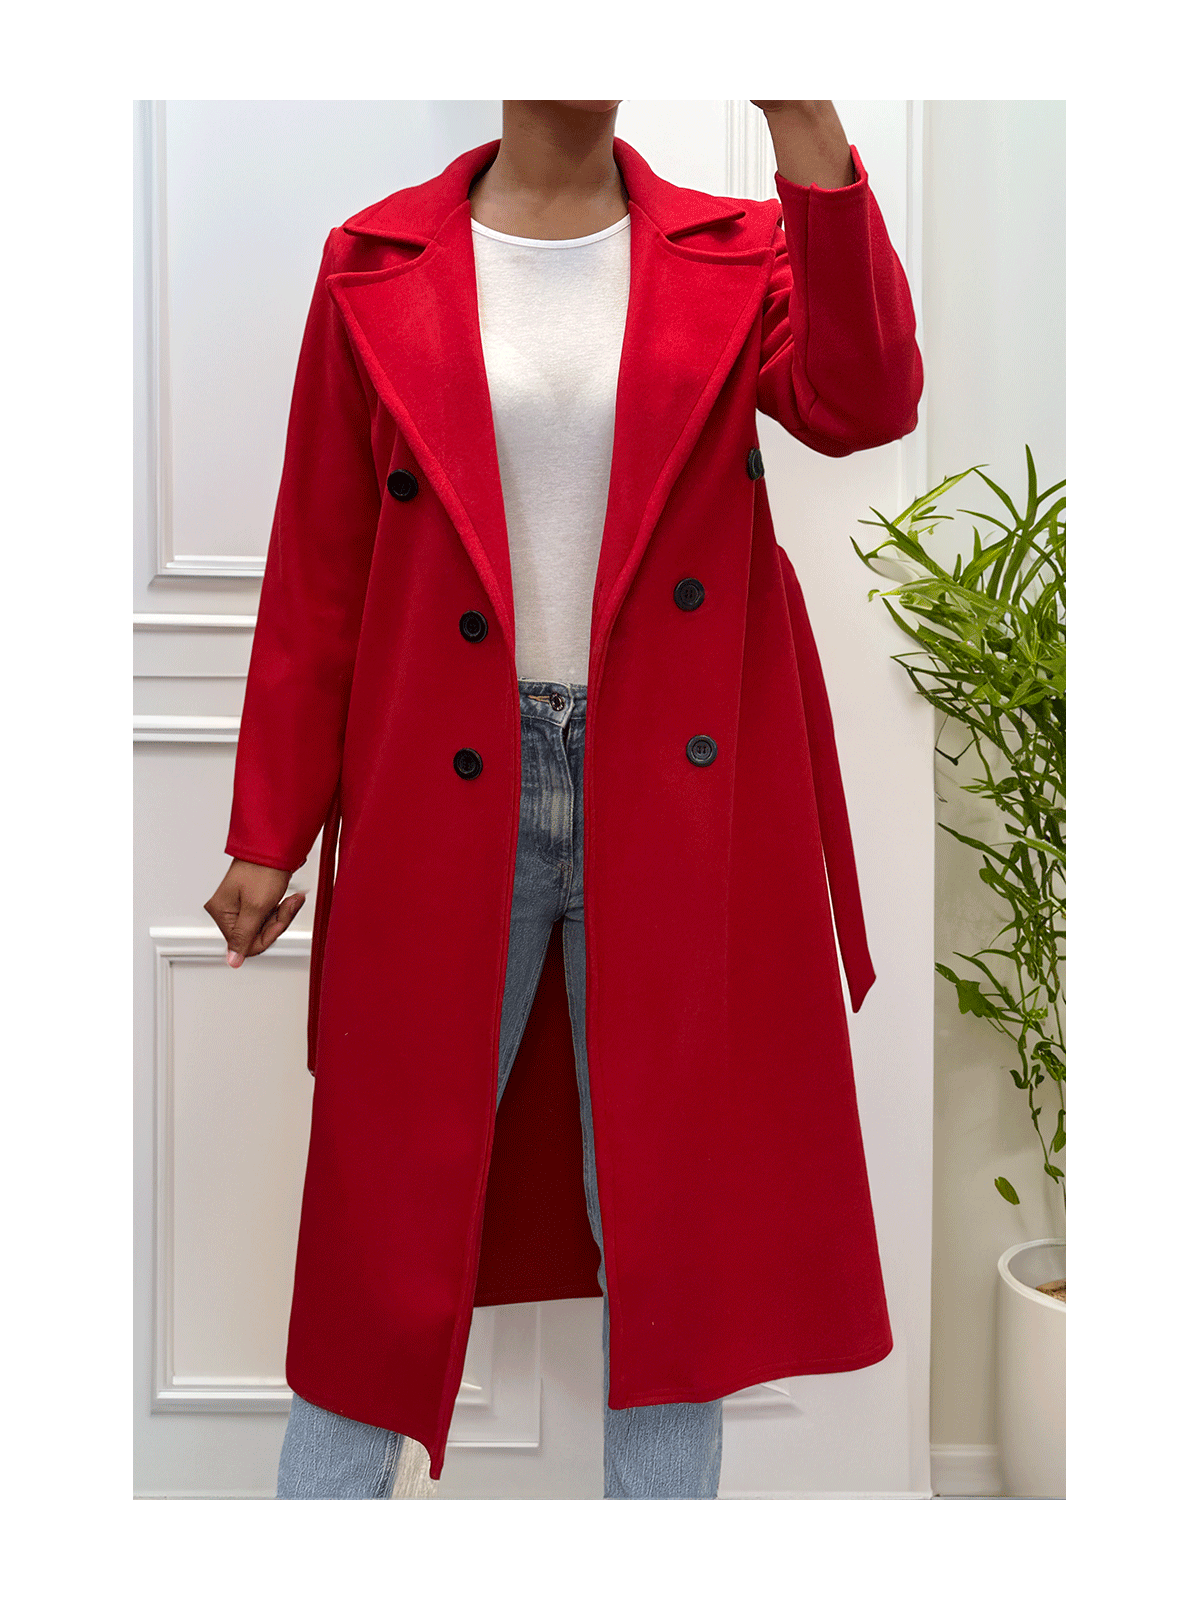 Long manteau croisé en rouge avec poches boutons et ceinture - 1